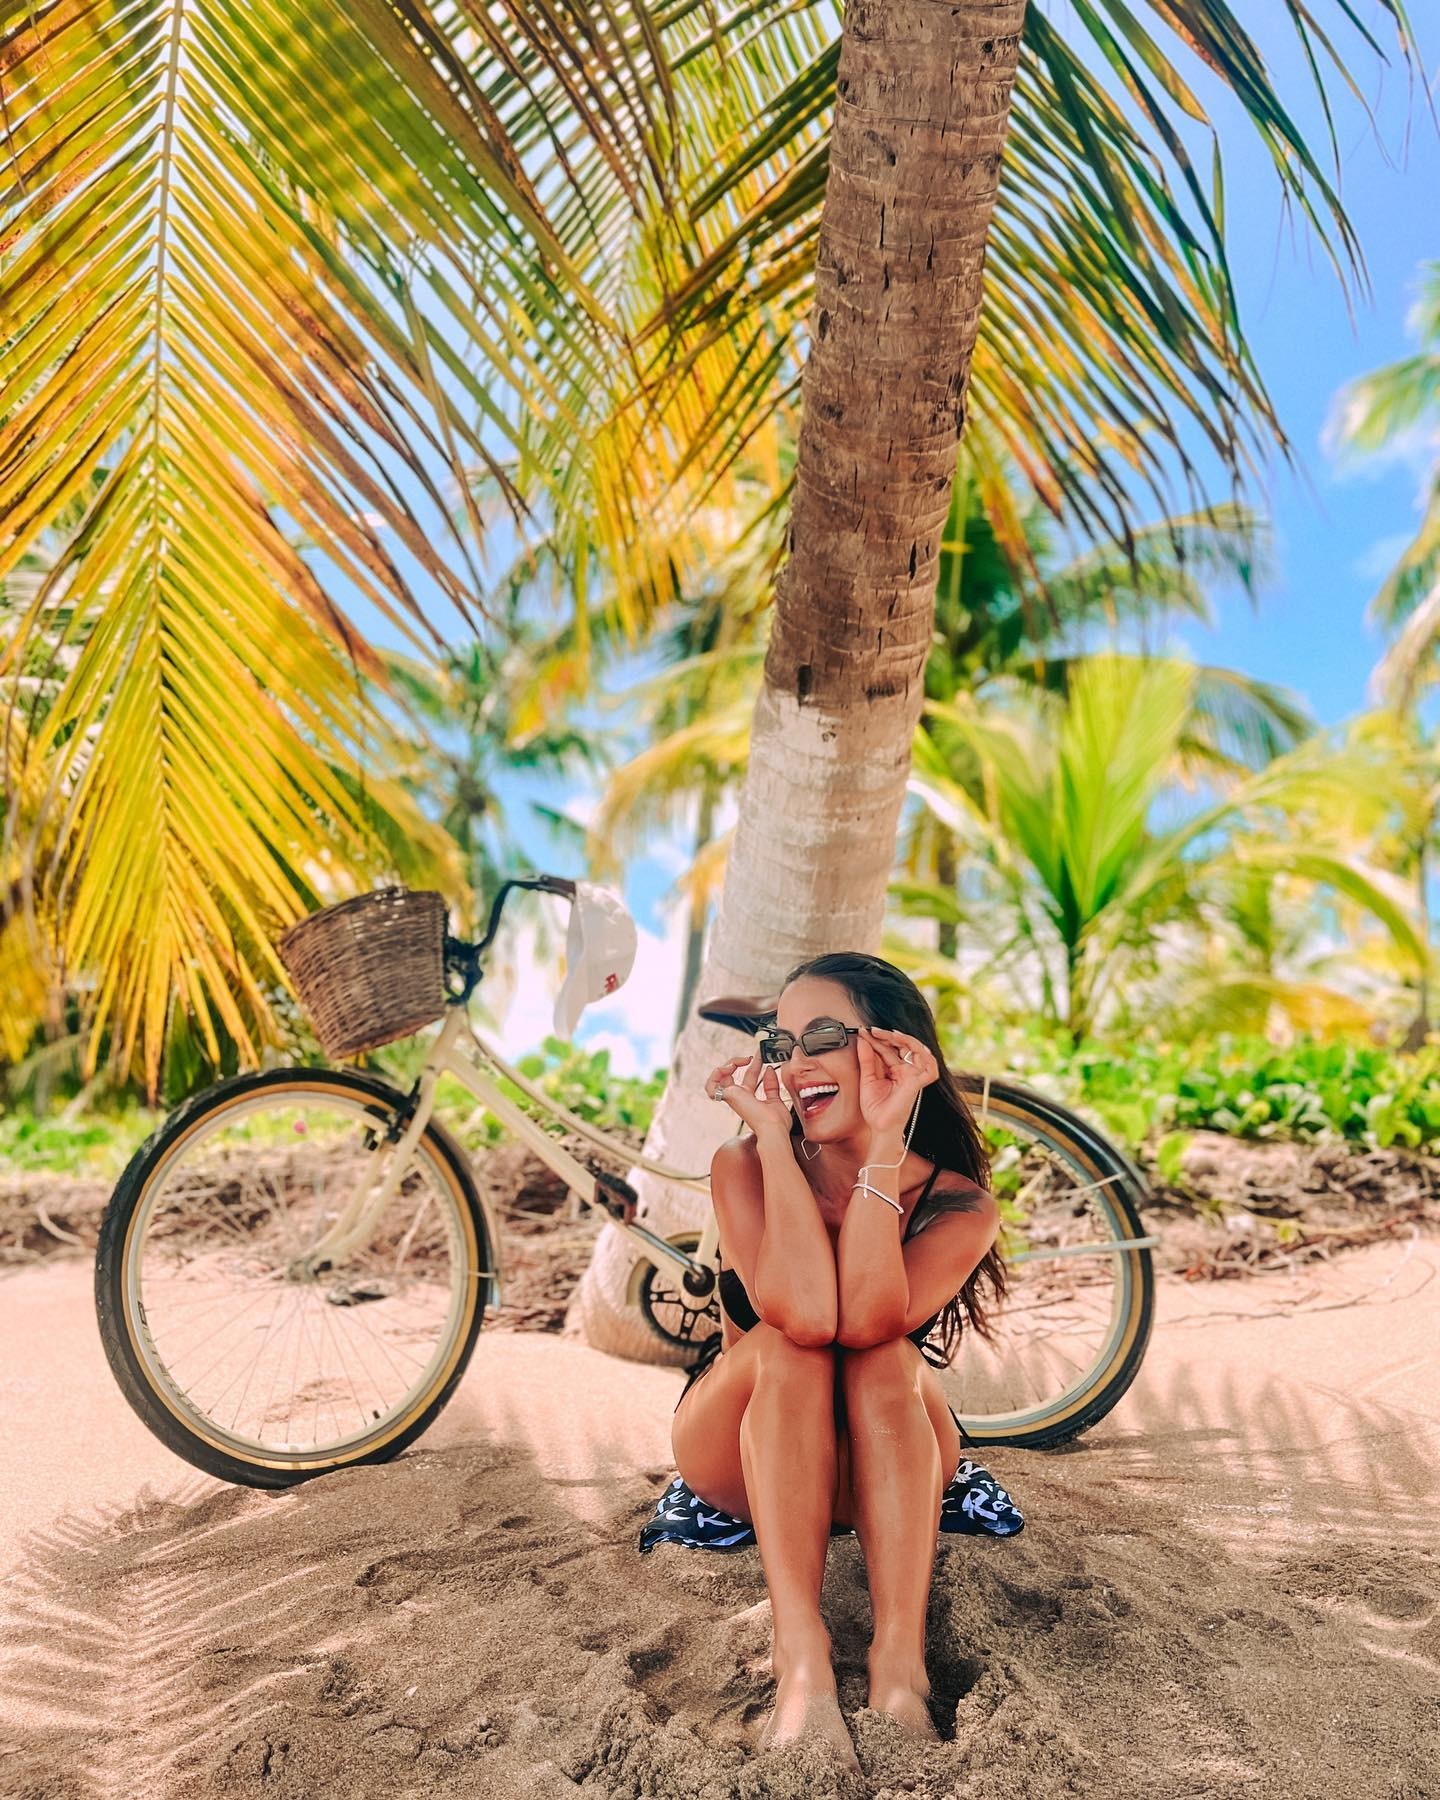 Carol Peixinho publica álbum de fotos após passeio de bicicleta na natureza (Foto: Reprodução / Instagram)